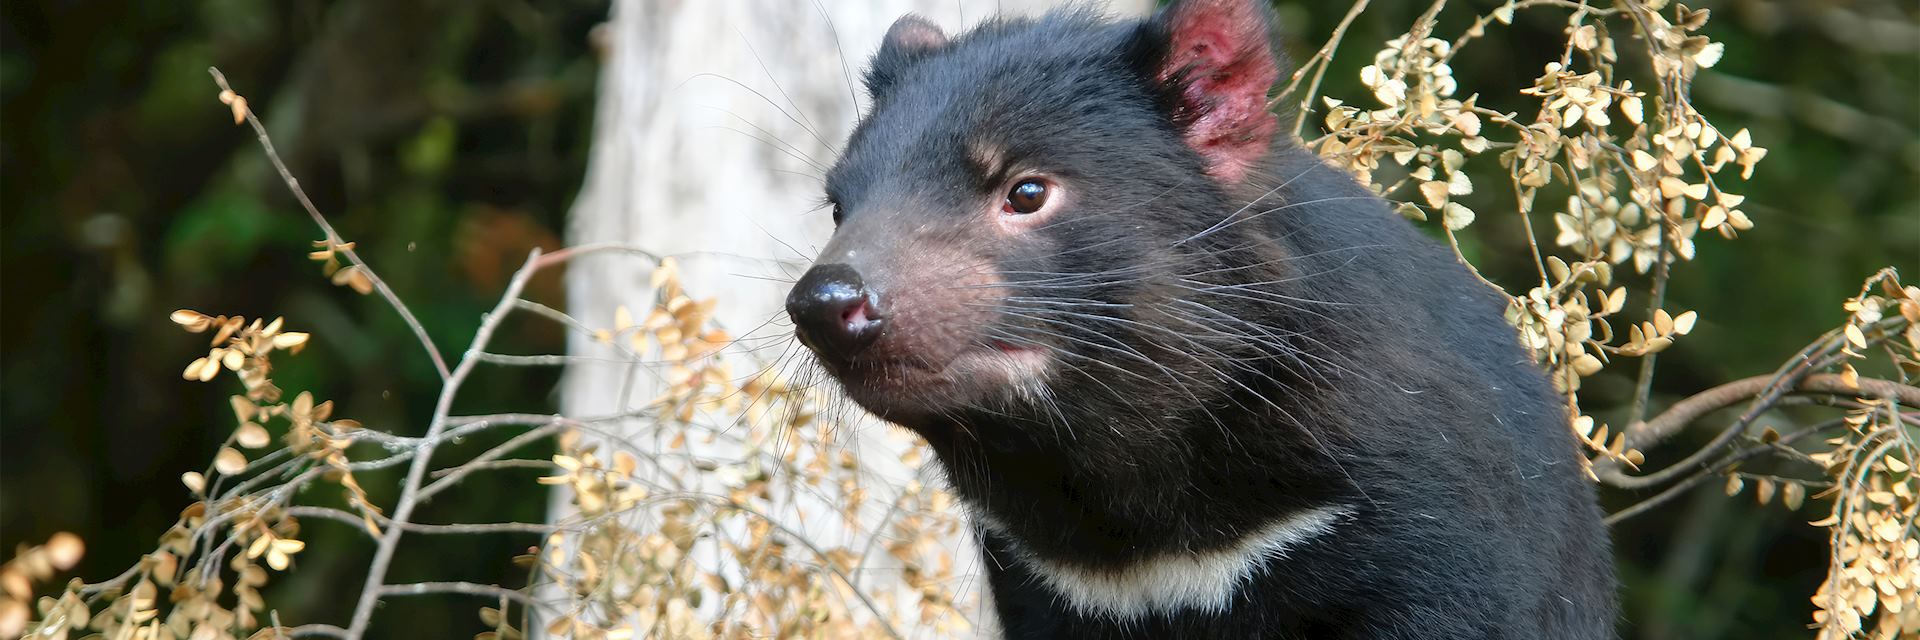 Tasmanian devil, Tasmania